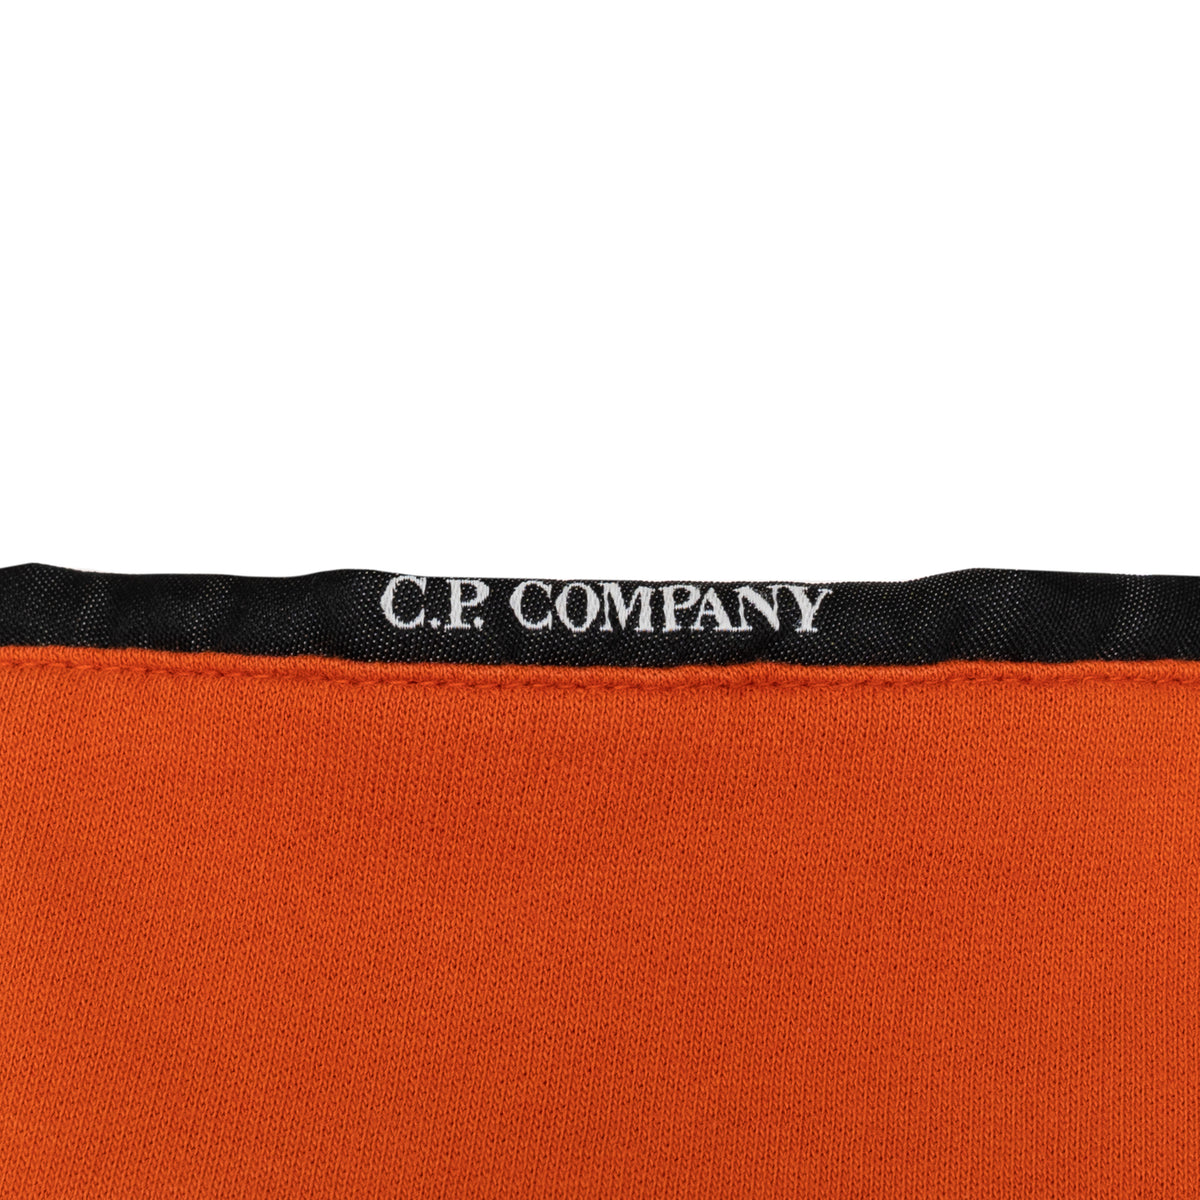 Load image into Gallery viewer, C.P. Company Harvest Pumpkin Light Fleece Quarter Zip
